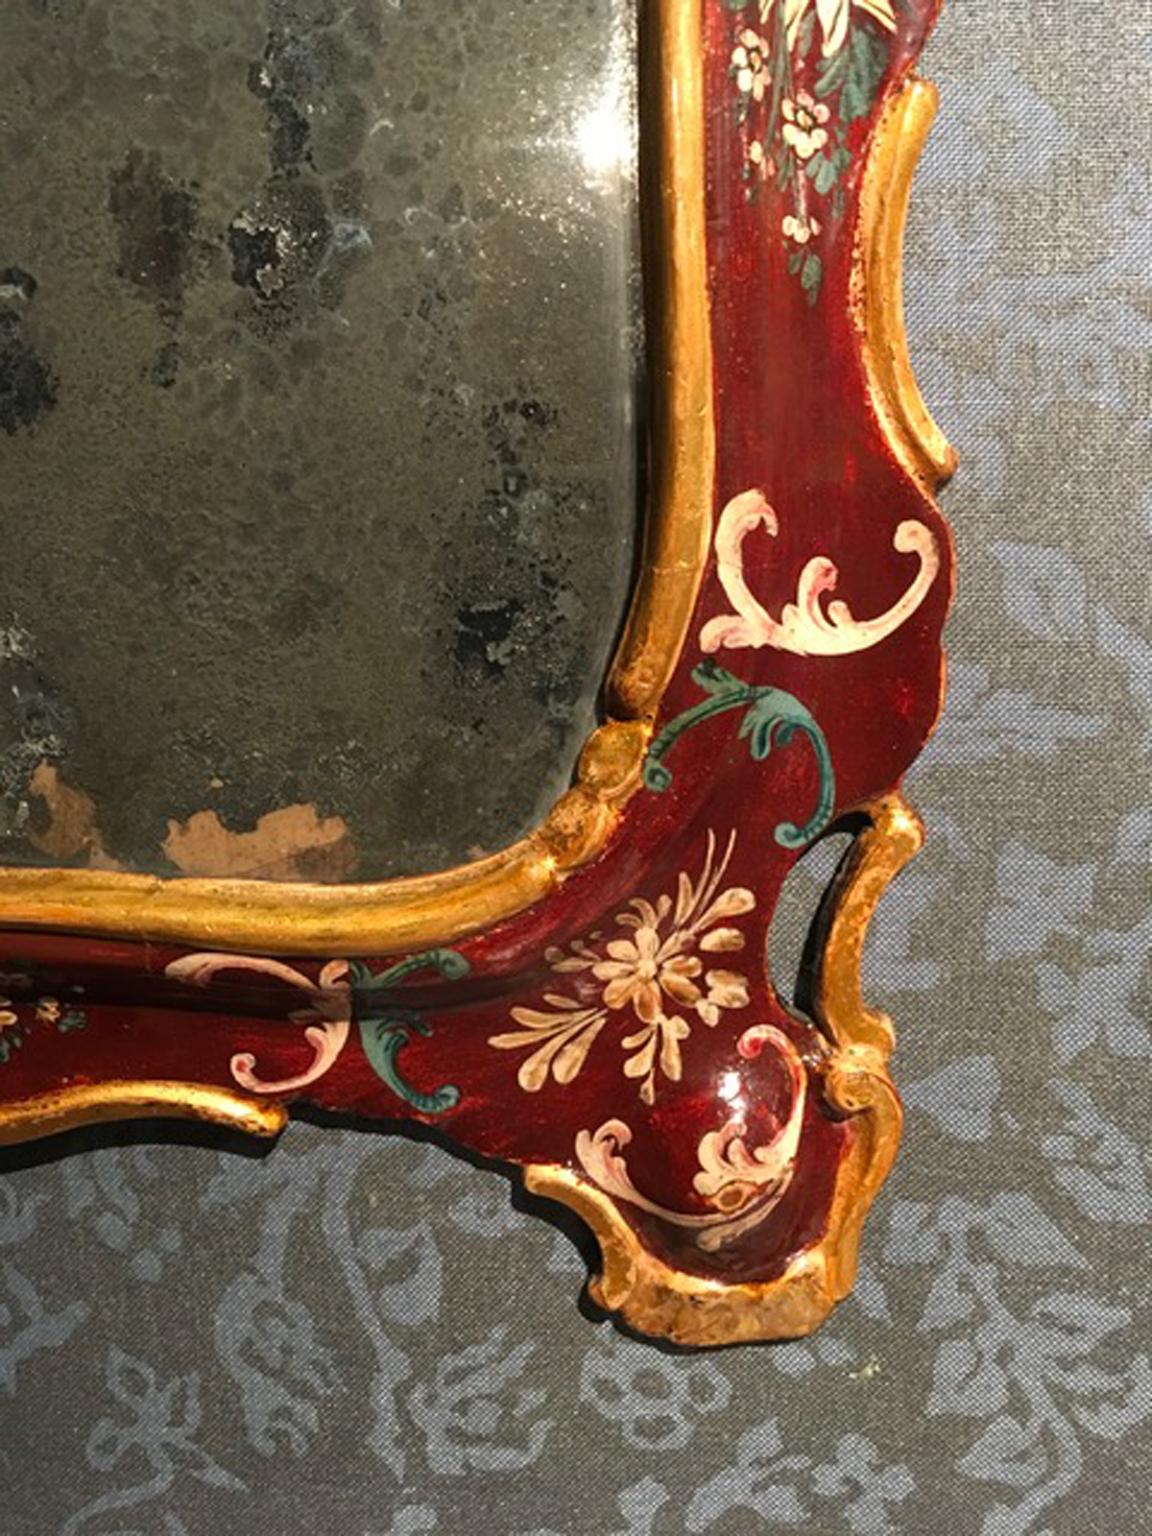 Dies ist ein sehr schöner handgefertigter Barockspiegel aus Holz, mit dem originalen Quecksilberglas. Der Holzrahmen ist von Hand mit eleganten Blumenzeichnungen und einem goldenen Rand bemalt. Ein perfektes Stück für die Einrichtung einer eleganten